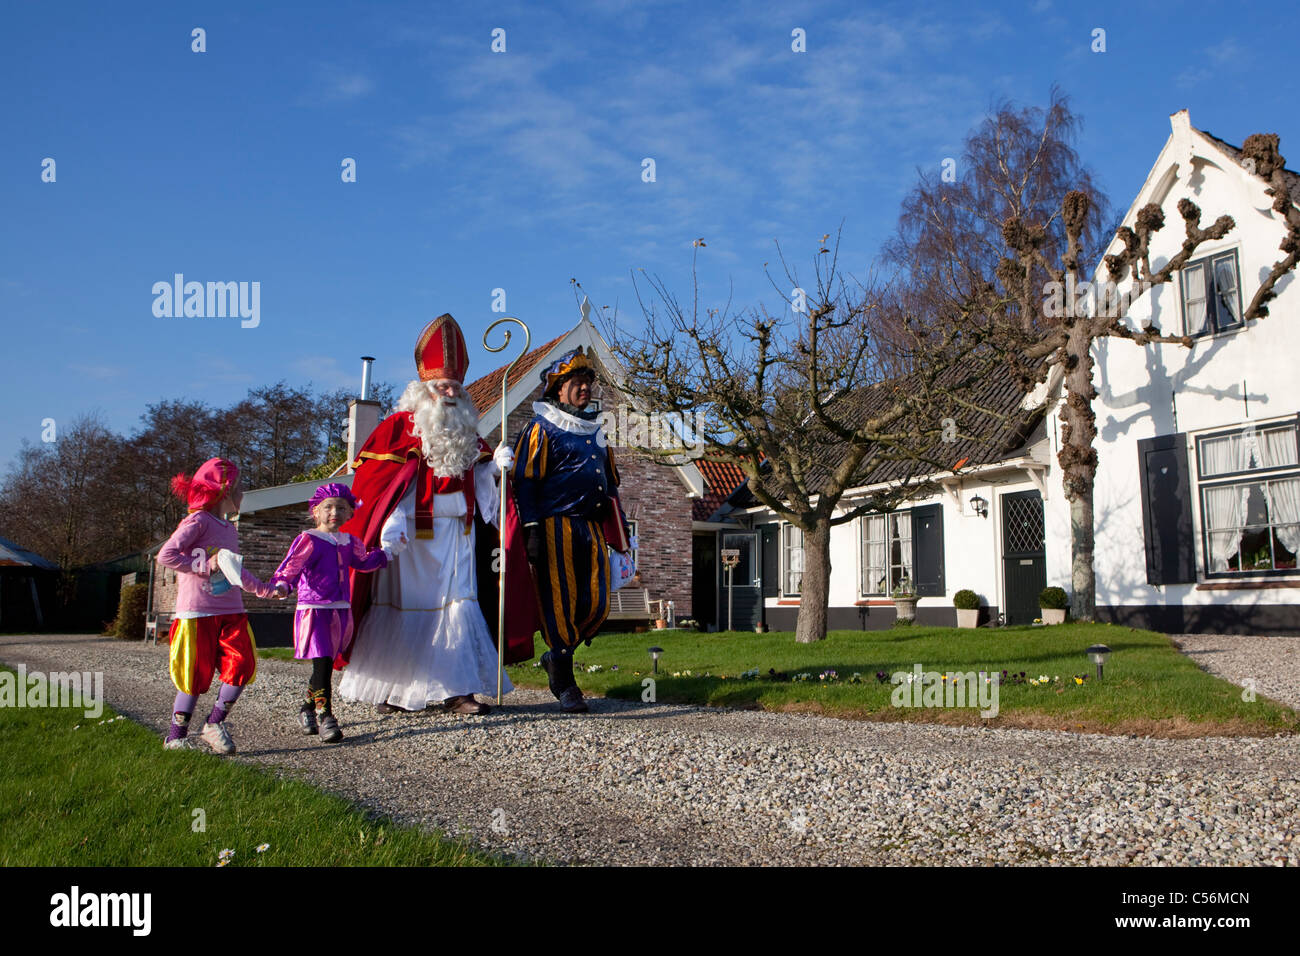 Den Niederlanden, Ankeveen, Festival der Sinterklaas oder Sint Nicolaas, jährlich am Vorabend der Nikolaus am 5. Dezember gefeiert. Stockfoto